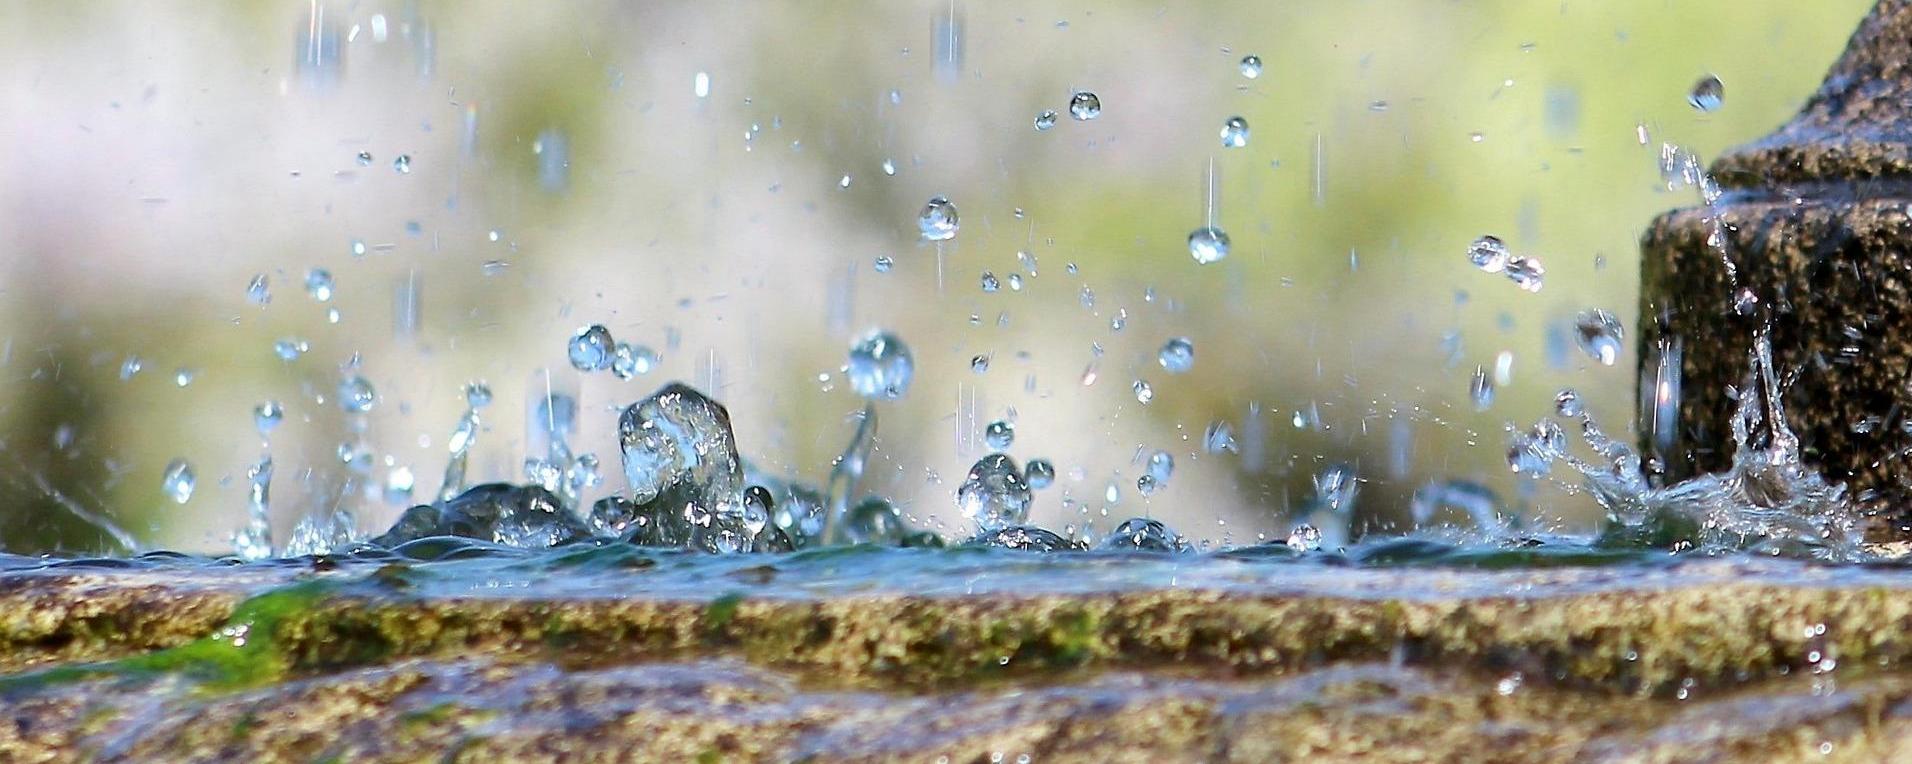 Depósitos de agua de lluvia con filtros — Pluvial